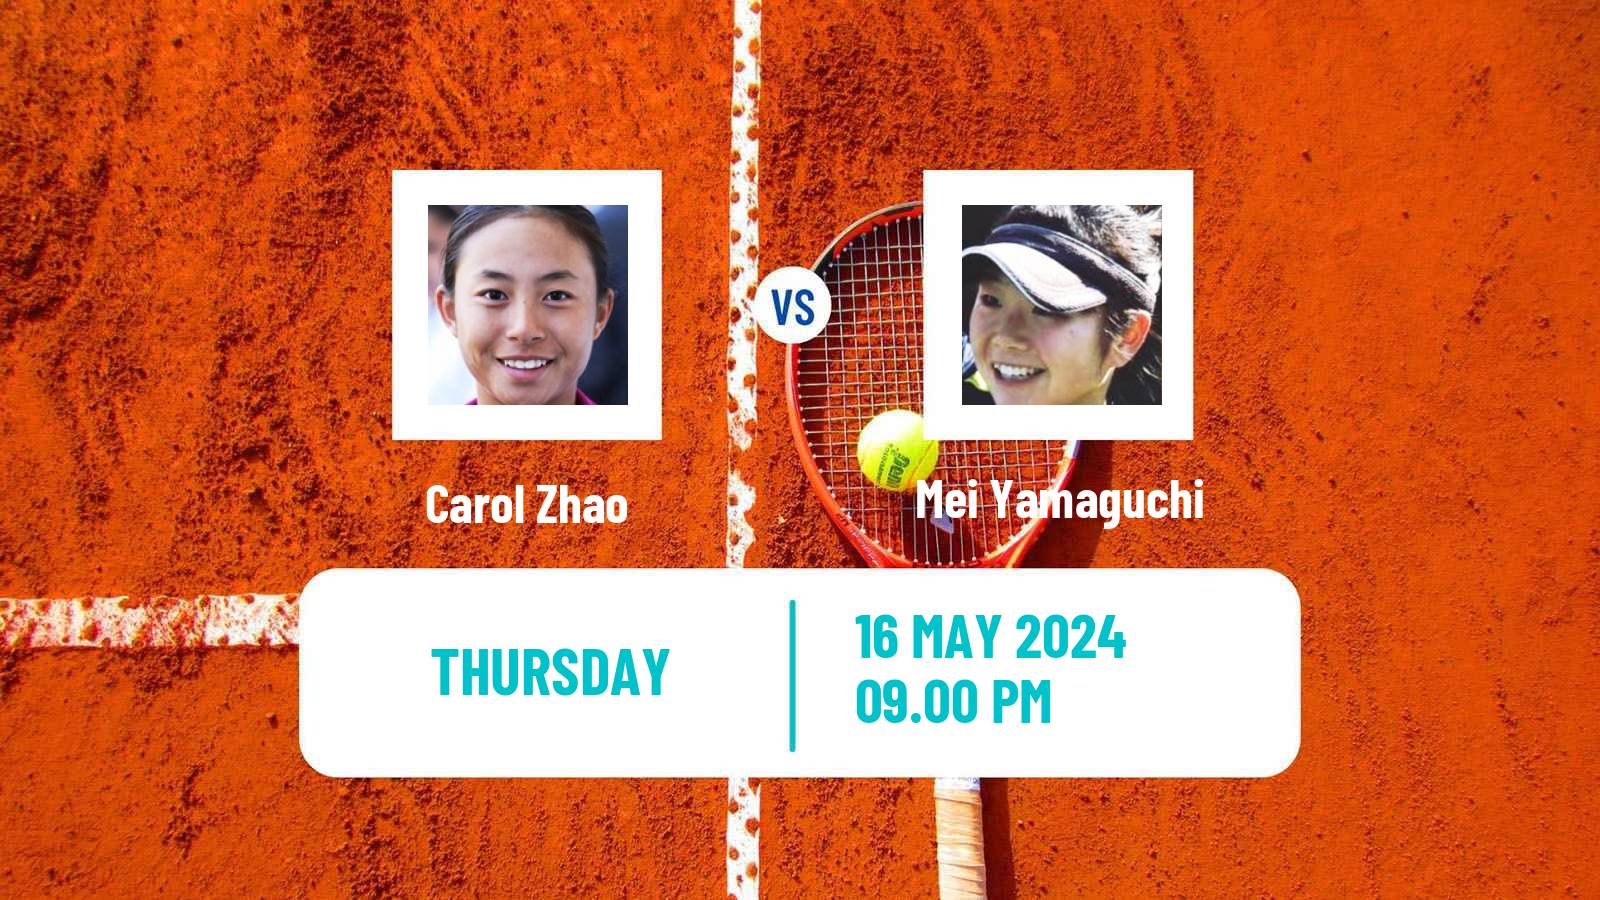 Tennis ITF W75 Kurume Women Carol Zhao - Mei Yamaguchi